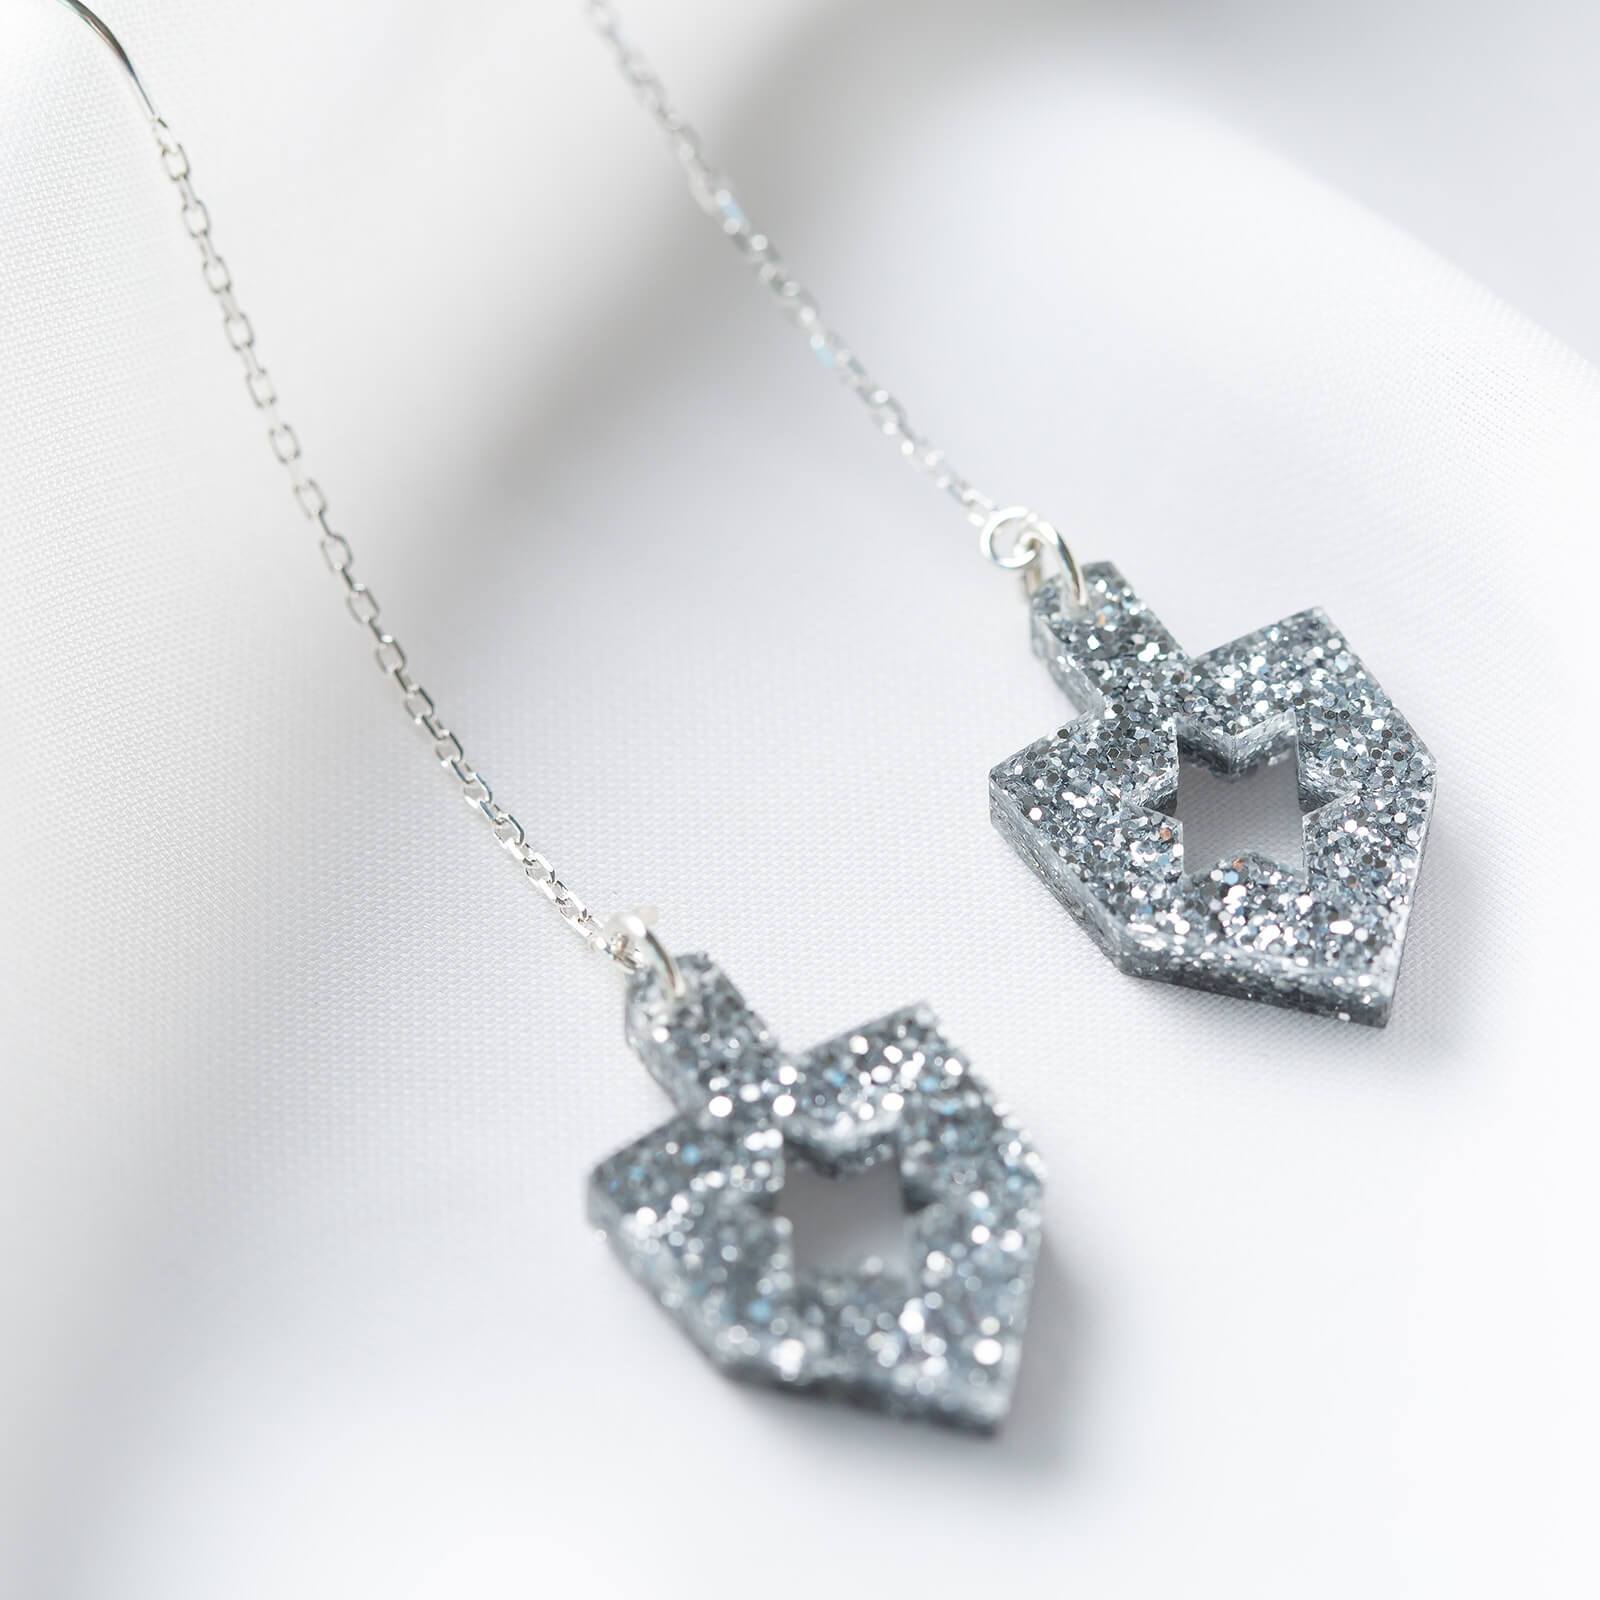 Ariel Tidhar Earrings Silver Dreidel Threaders - Silver Glitter